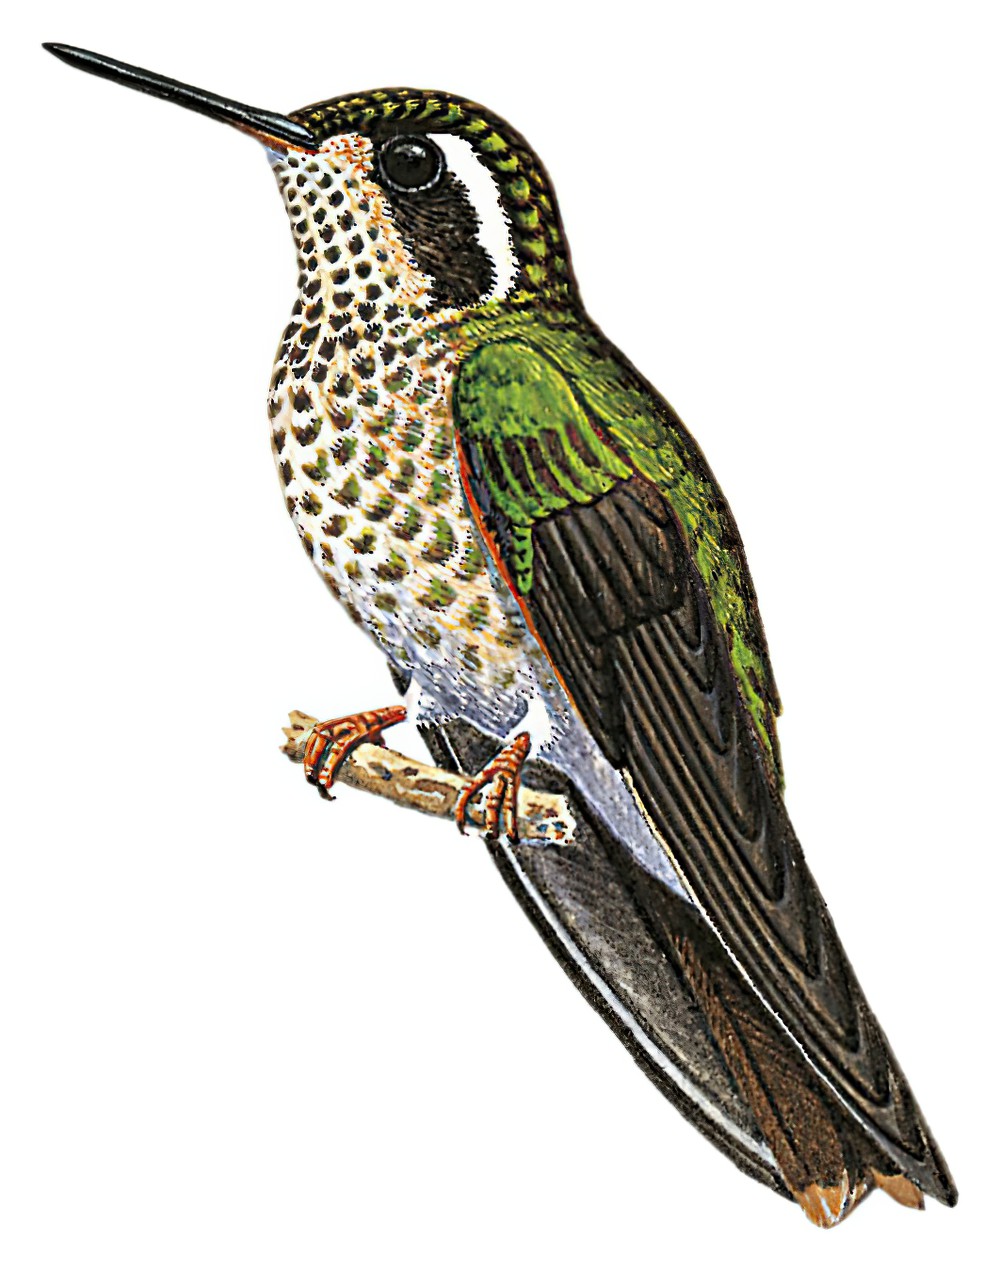 Speckled Hummingbird / Adelomyia melanogenys